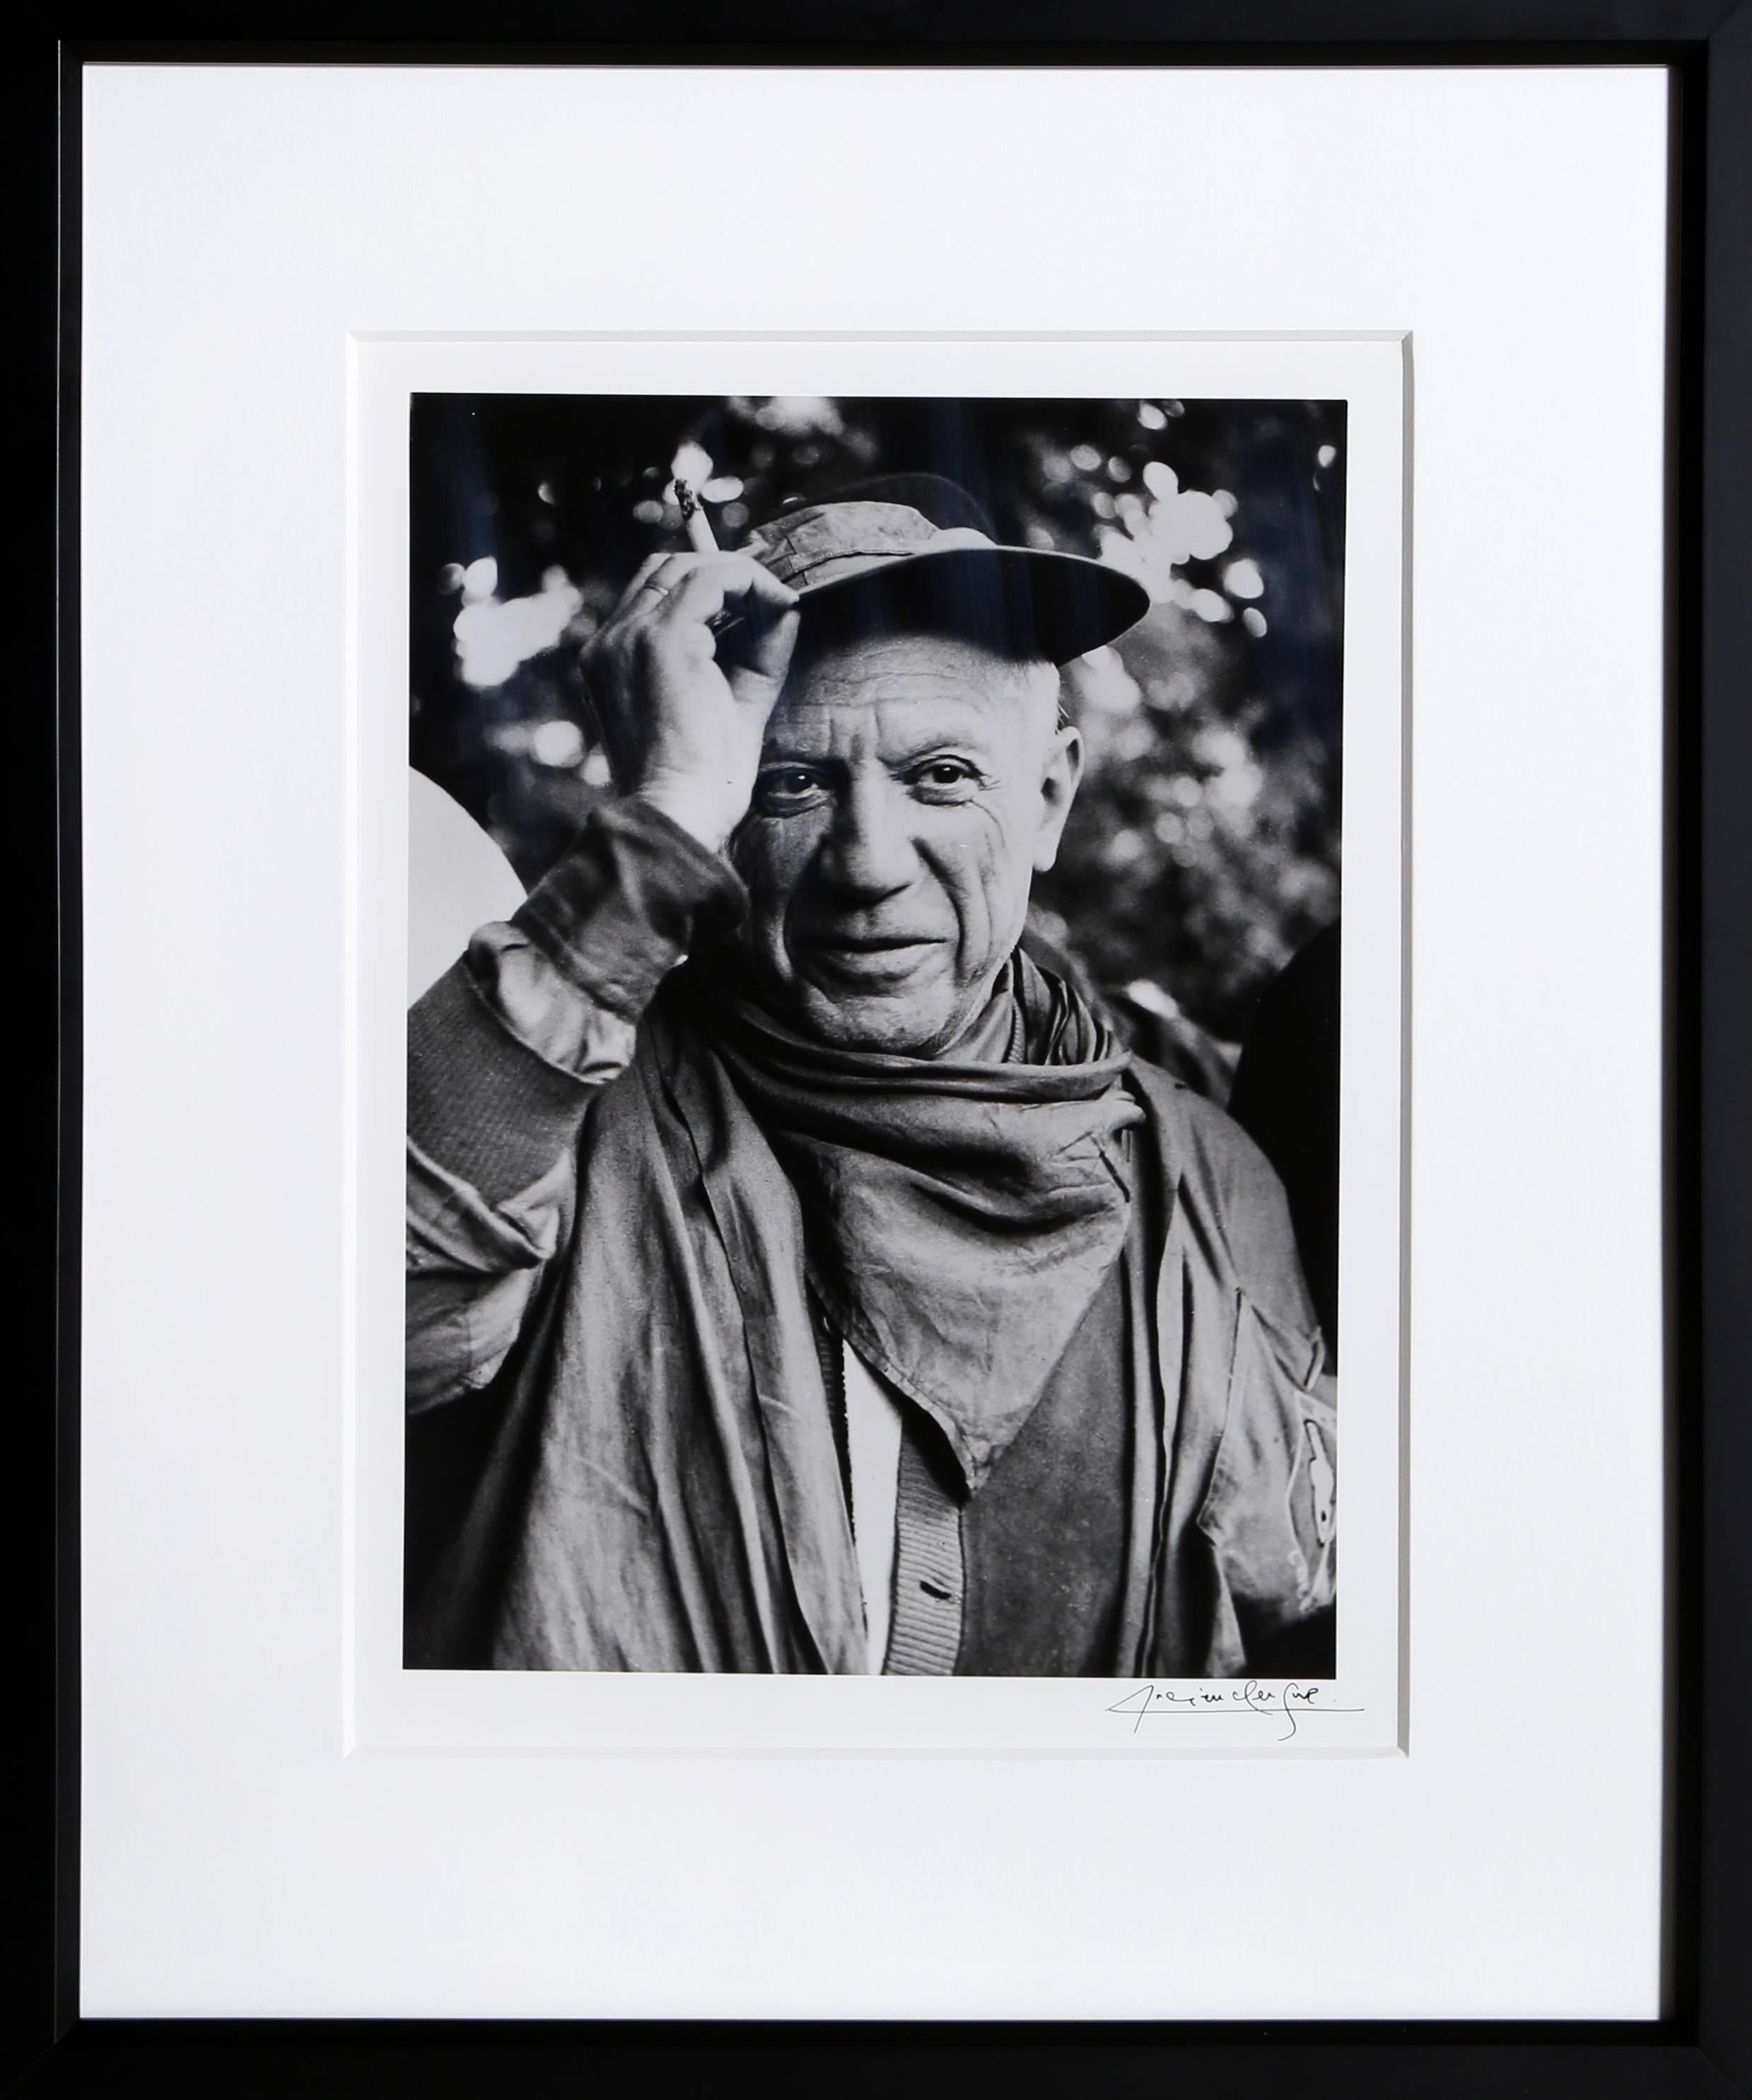 Lucien Clergue Portrait Photograph - Picasso a la Feria, revetu des habits de la Pena de Logrono - Nimes, 1959